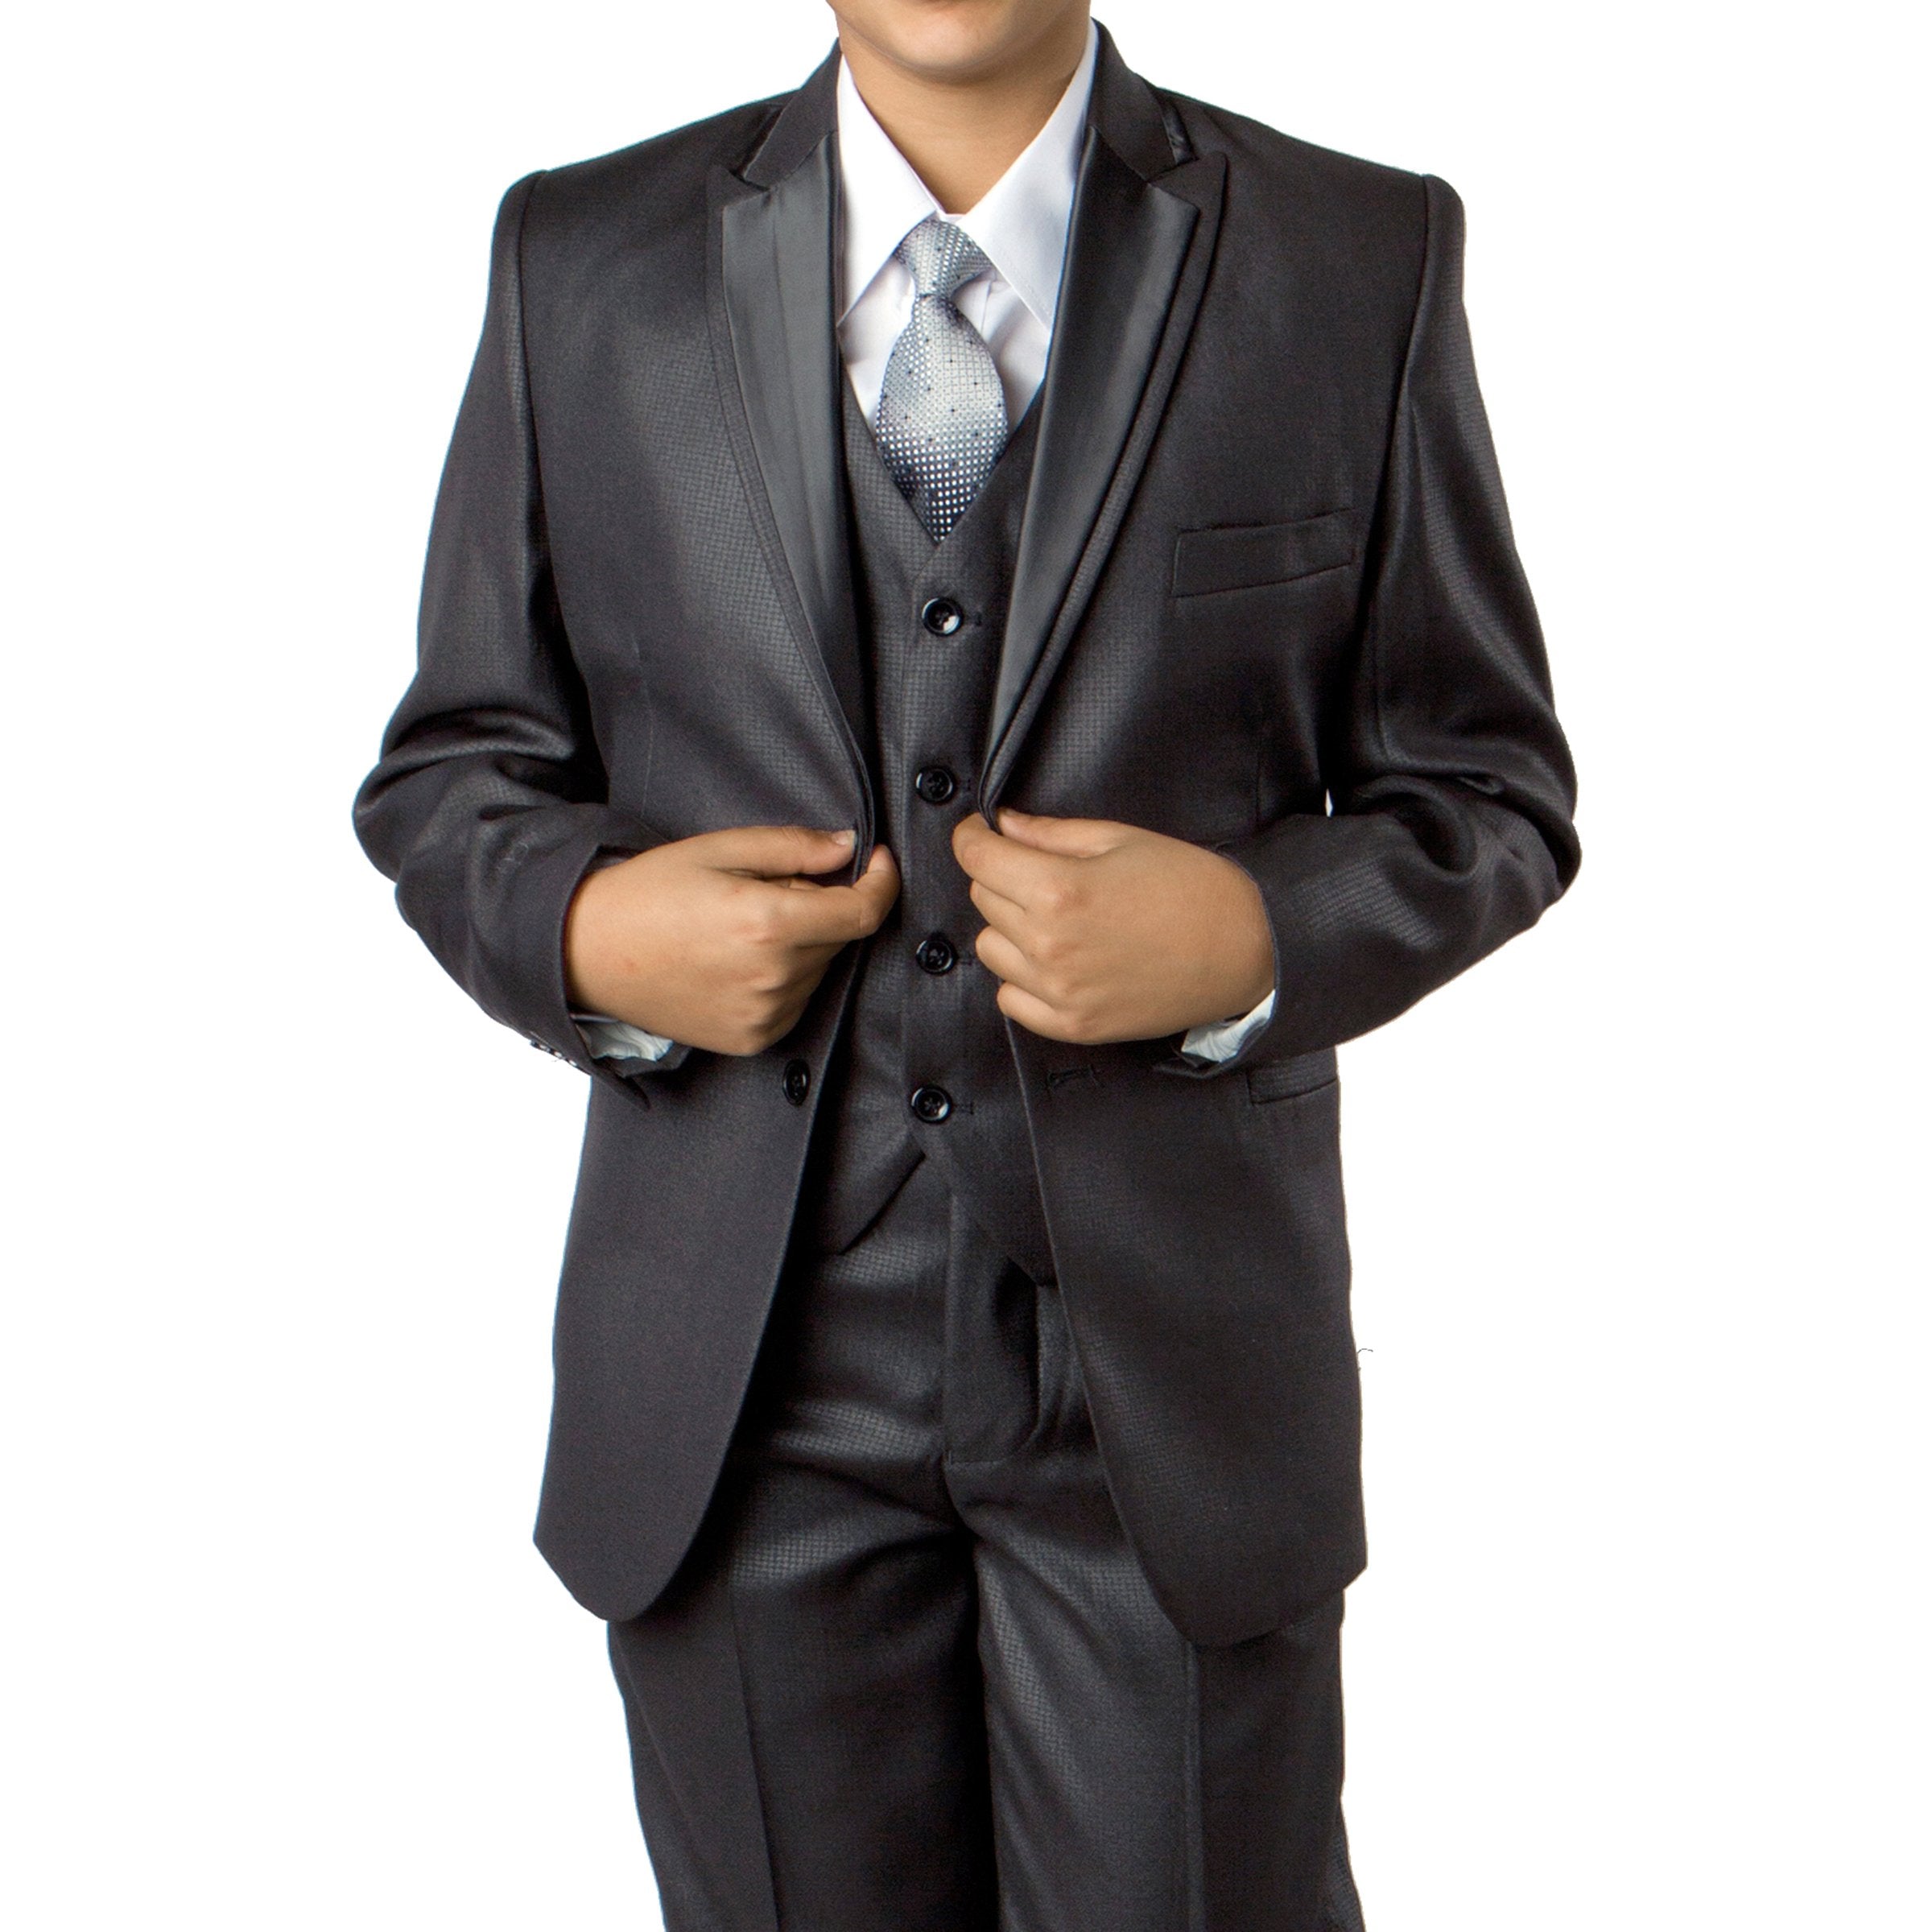 Solid Suit W Satin Trim Jacket Suits For Boy's